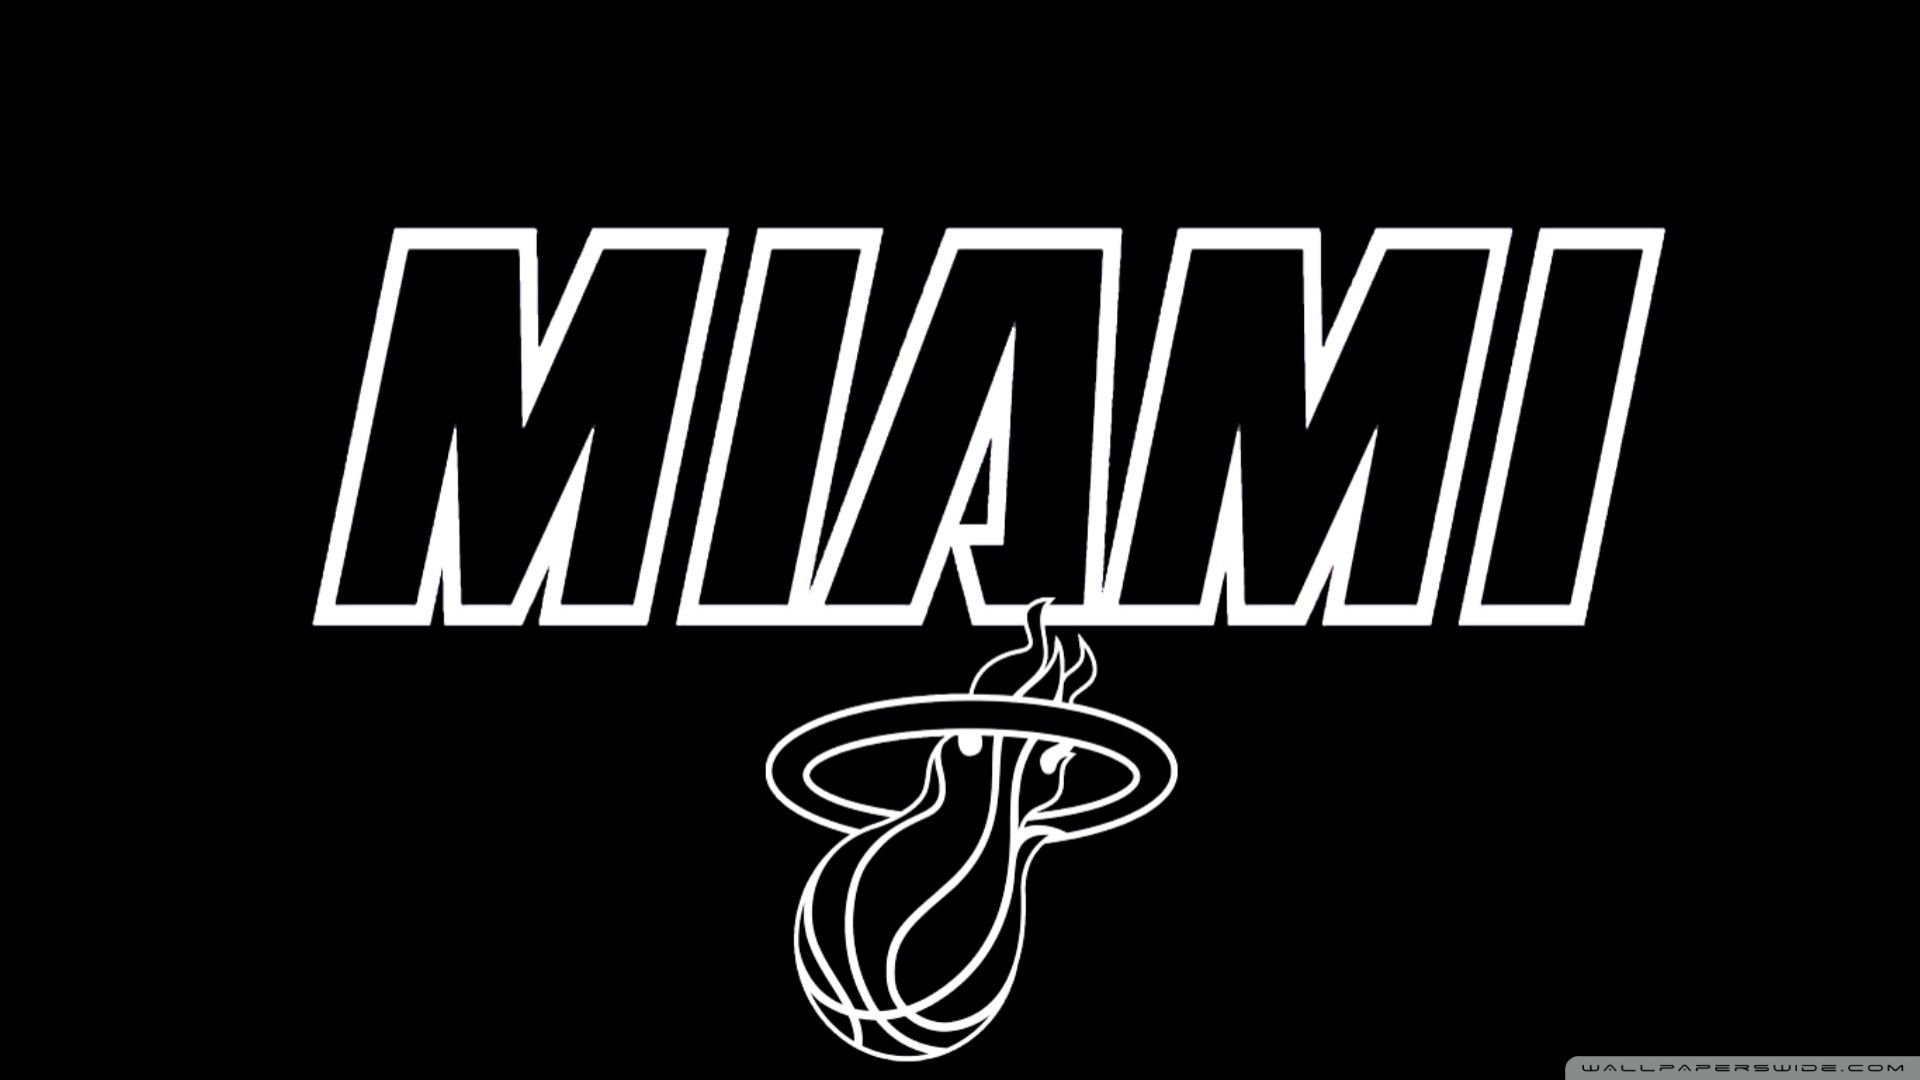 Sports Miami Heat 4k Ultra HD Wallpaper